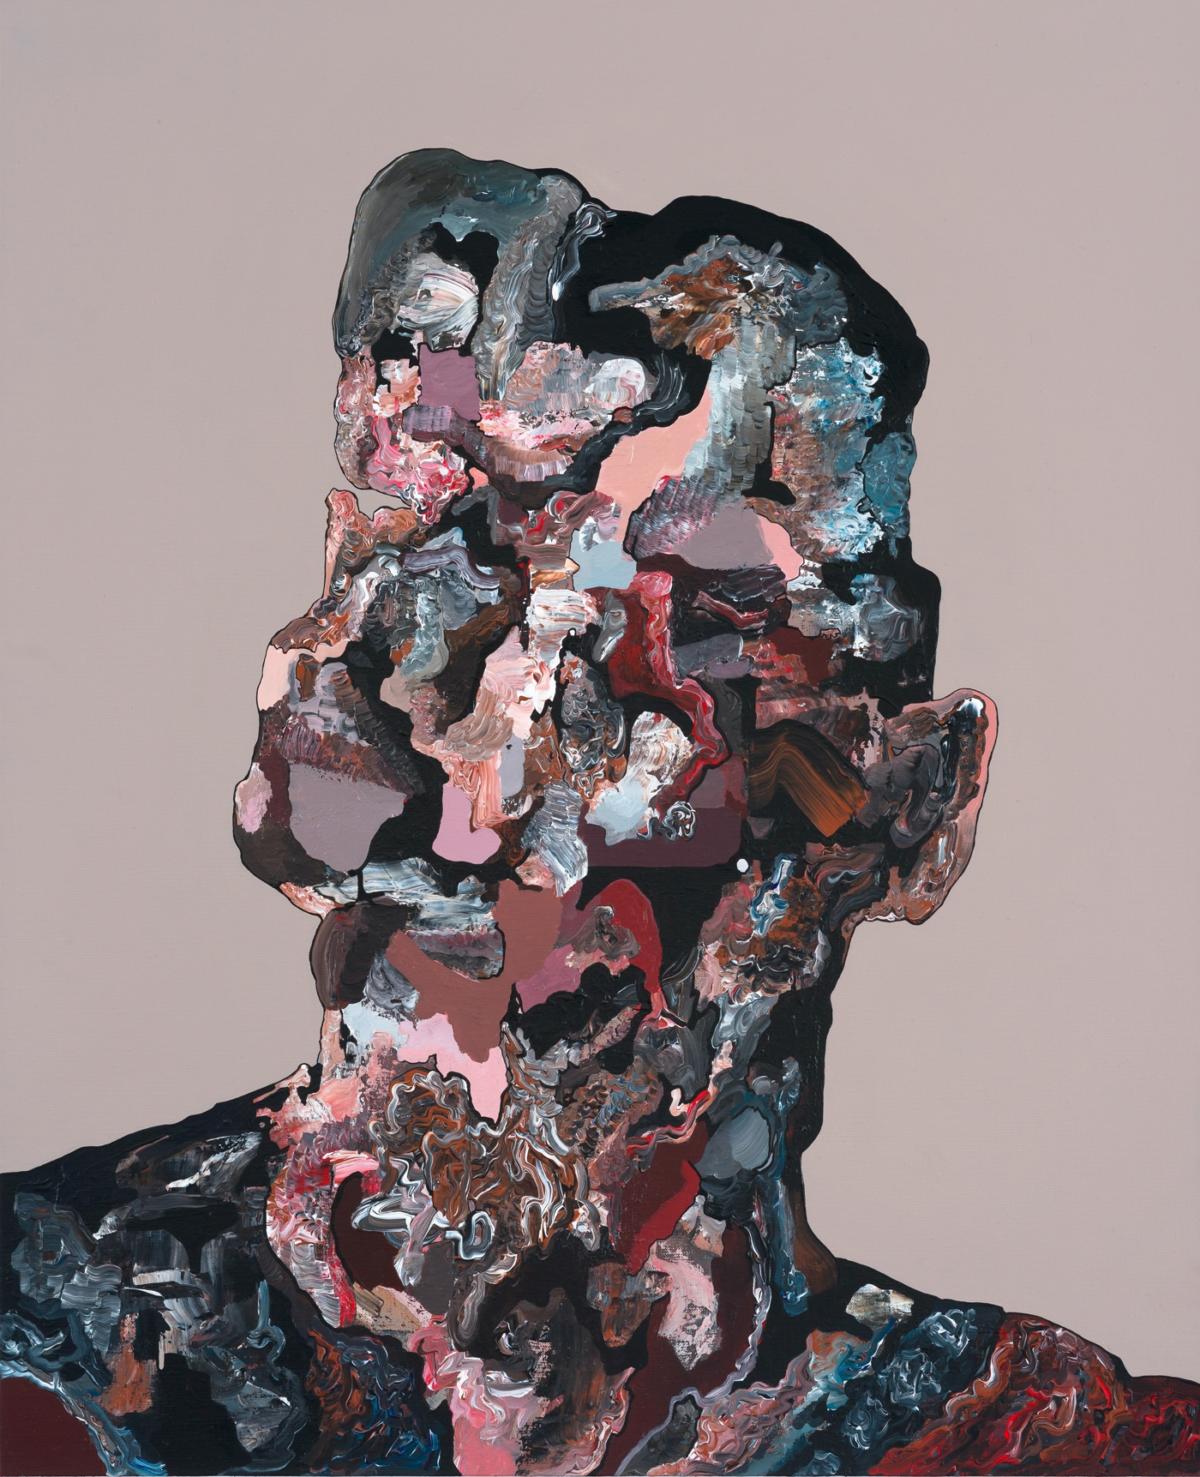 2017, Portret anonimowego màodego m©æczyzny, akryl na pà¢tnie, 65 x 80 cm